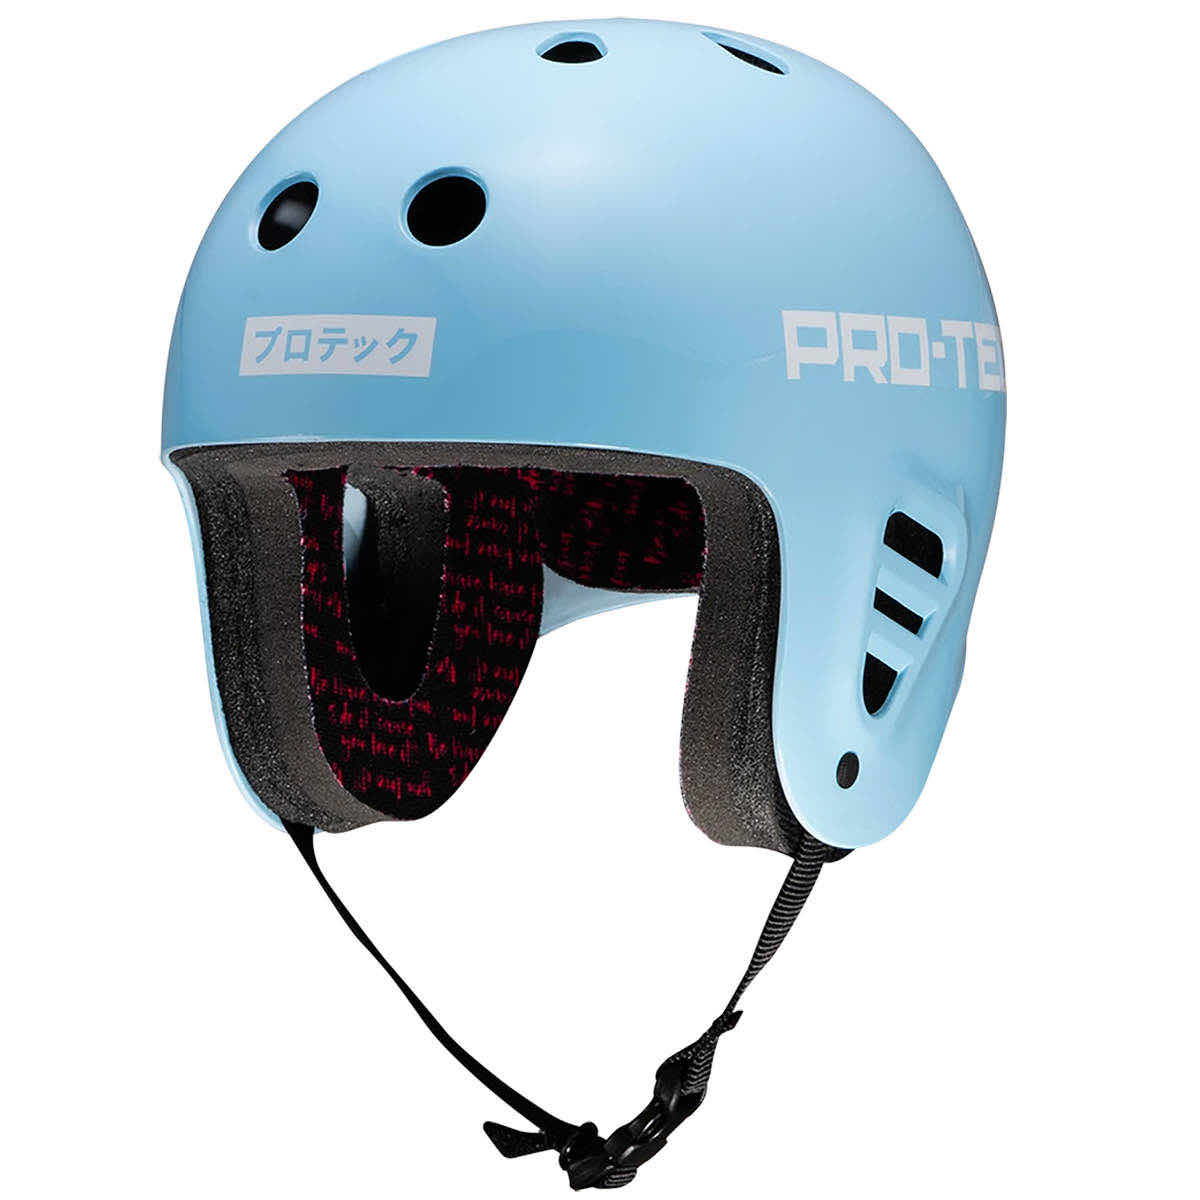 Pro-Tec x Powell Peralta Cab Dragon Classic Helmet Black 